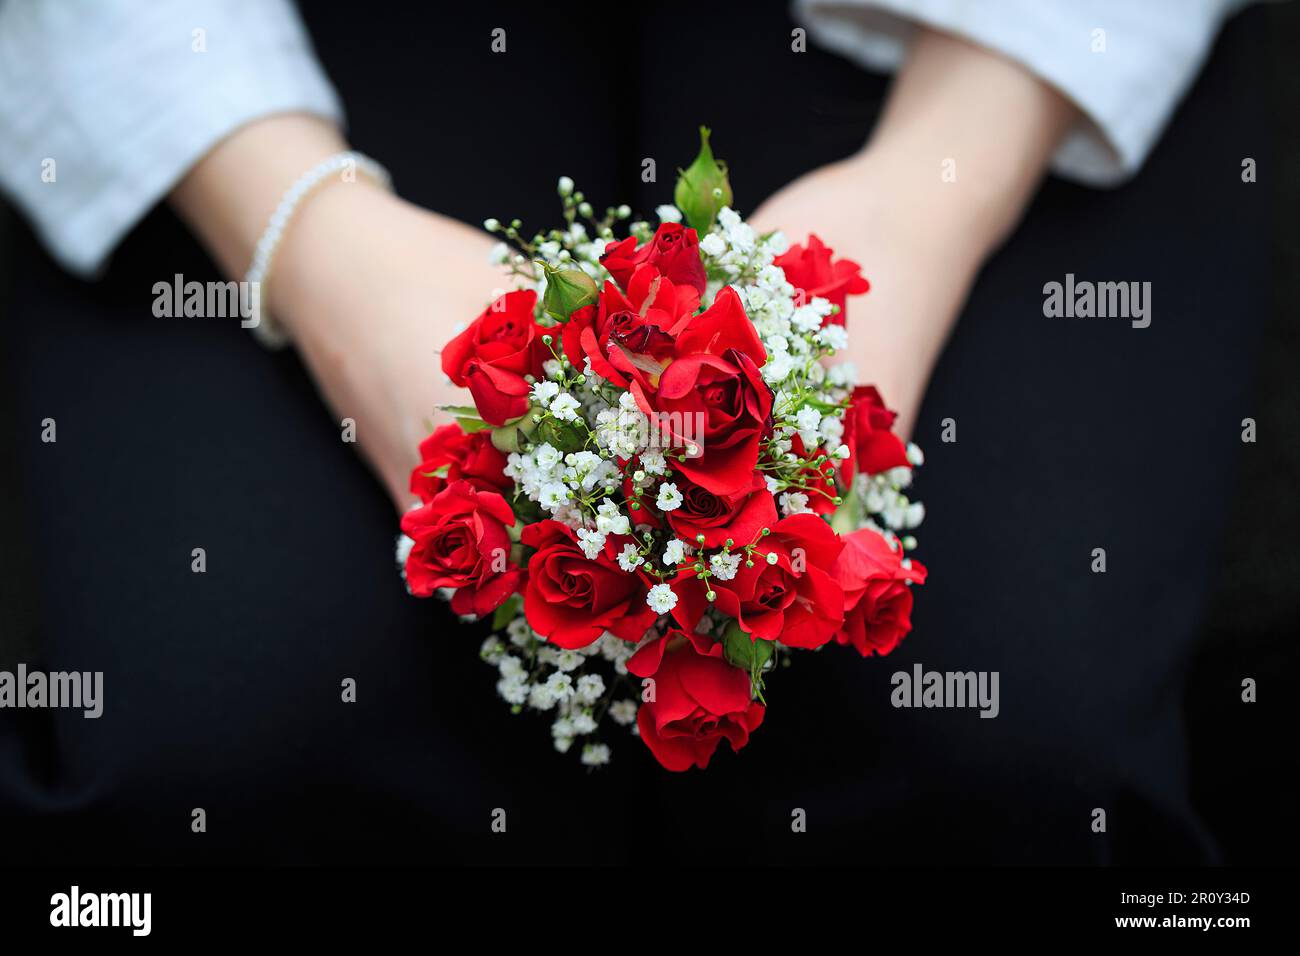 Zwei Hände halten einen kleinen roten Rosenstrauß Foto Stock